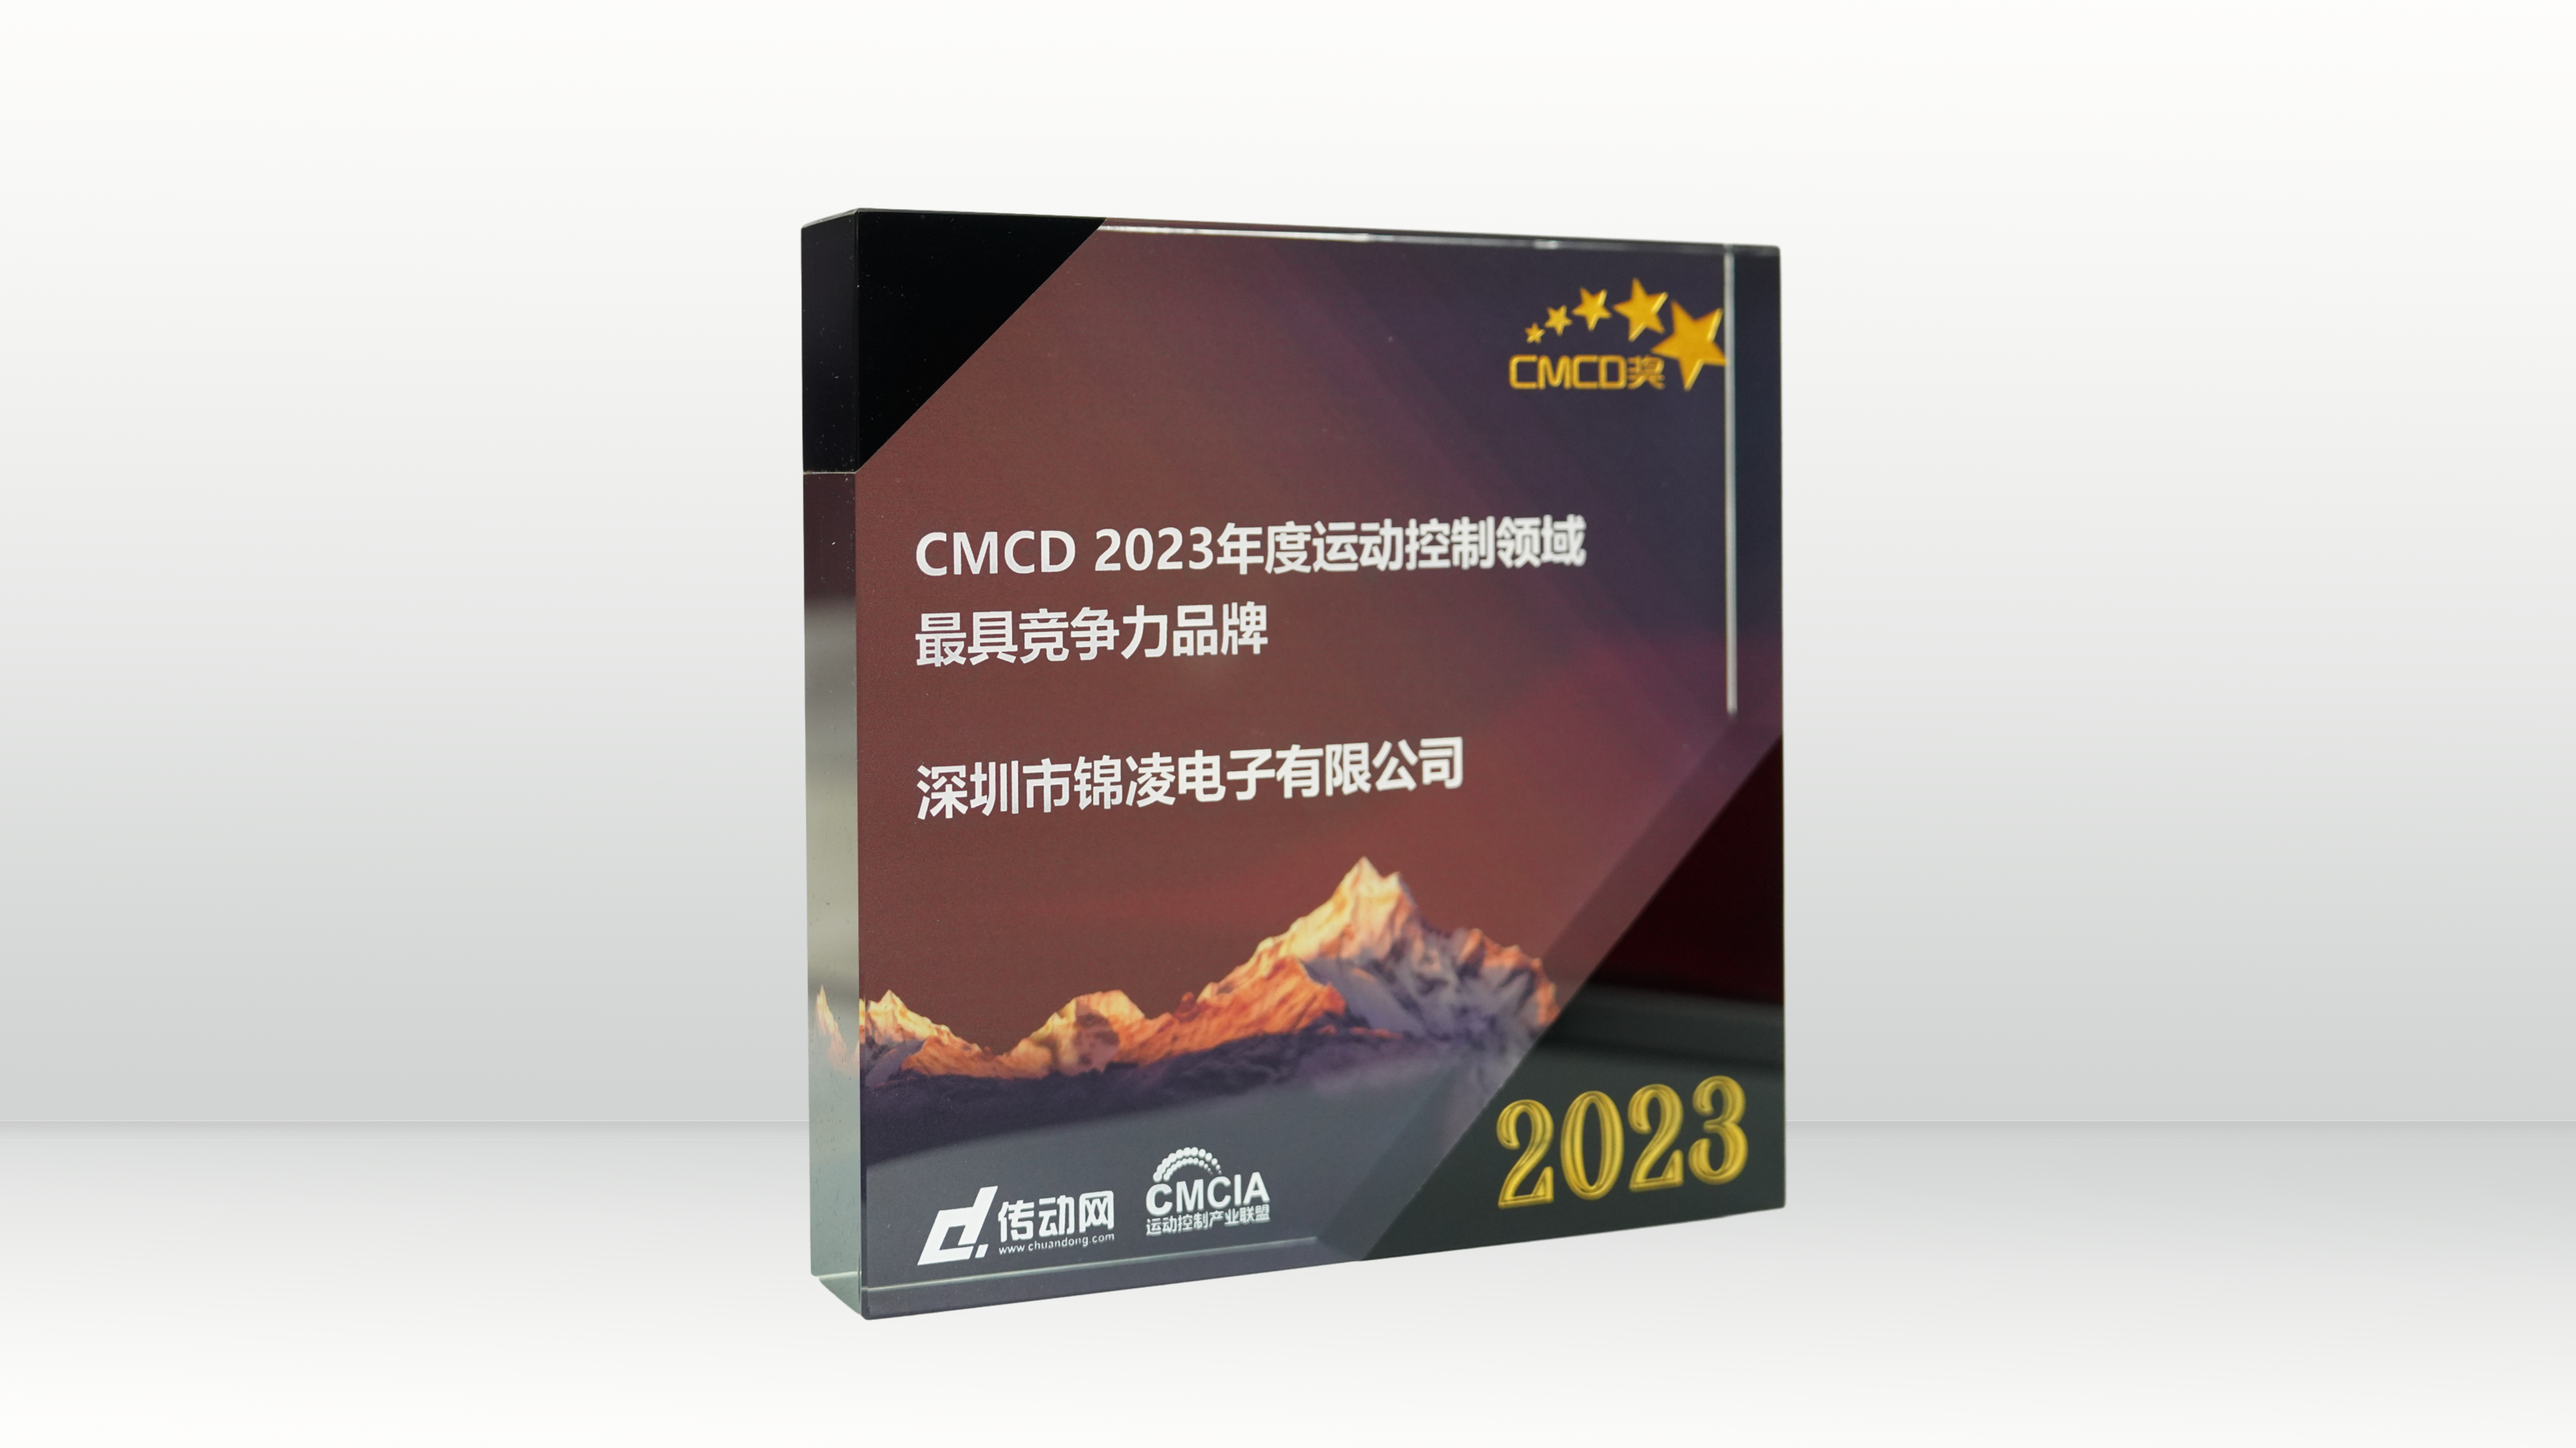 CMCD2023年度运动控制领域最具竞争力品牌